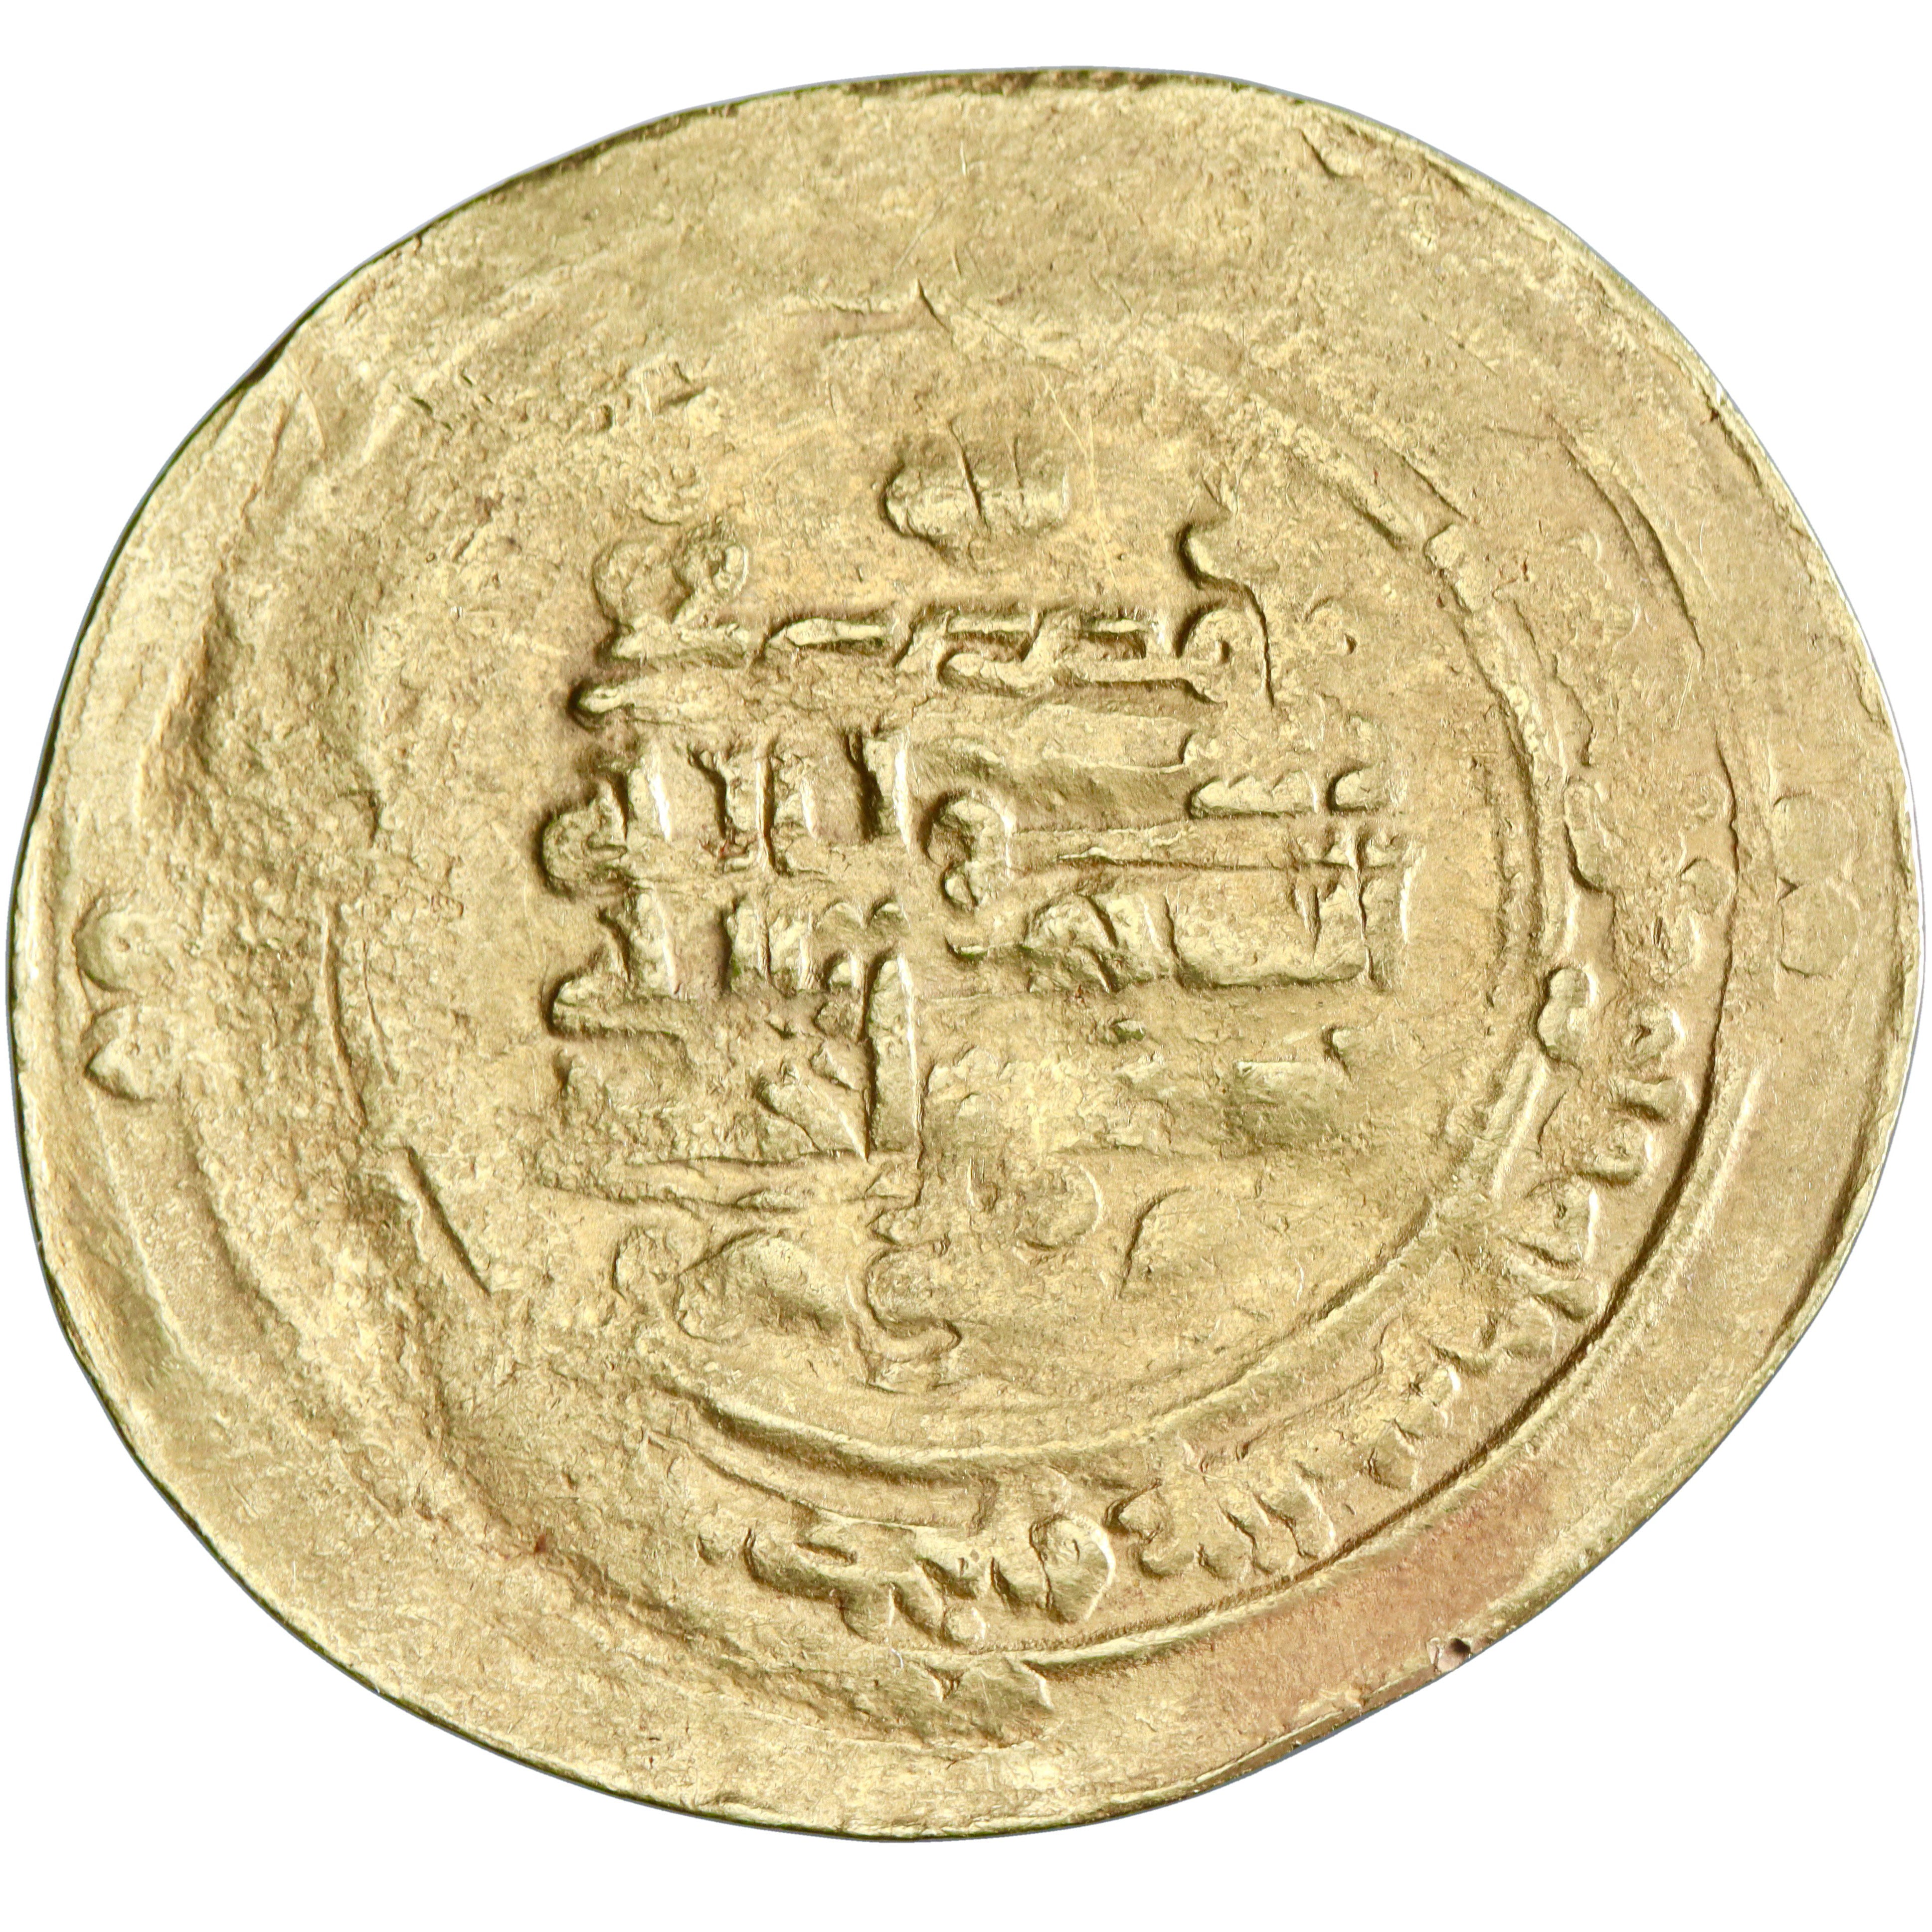 Samanid, Nasr II ibn Ahmad, gold dinar, al-Muhammadiya mint, AH 322, citing al-Qahir